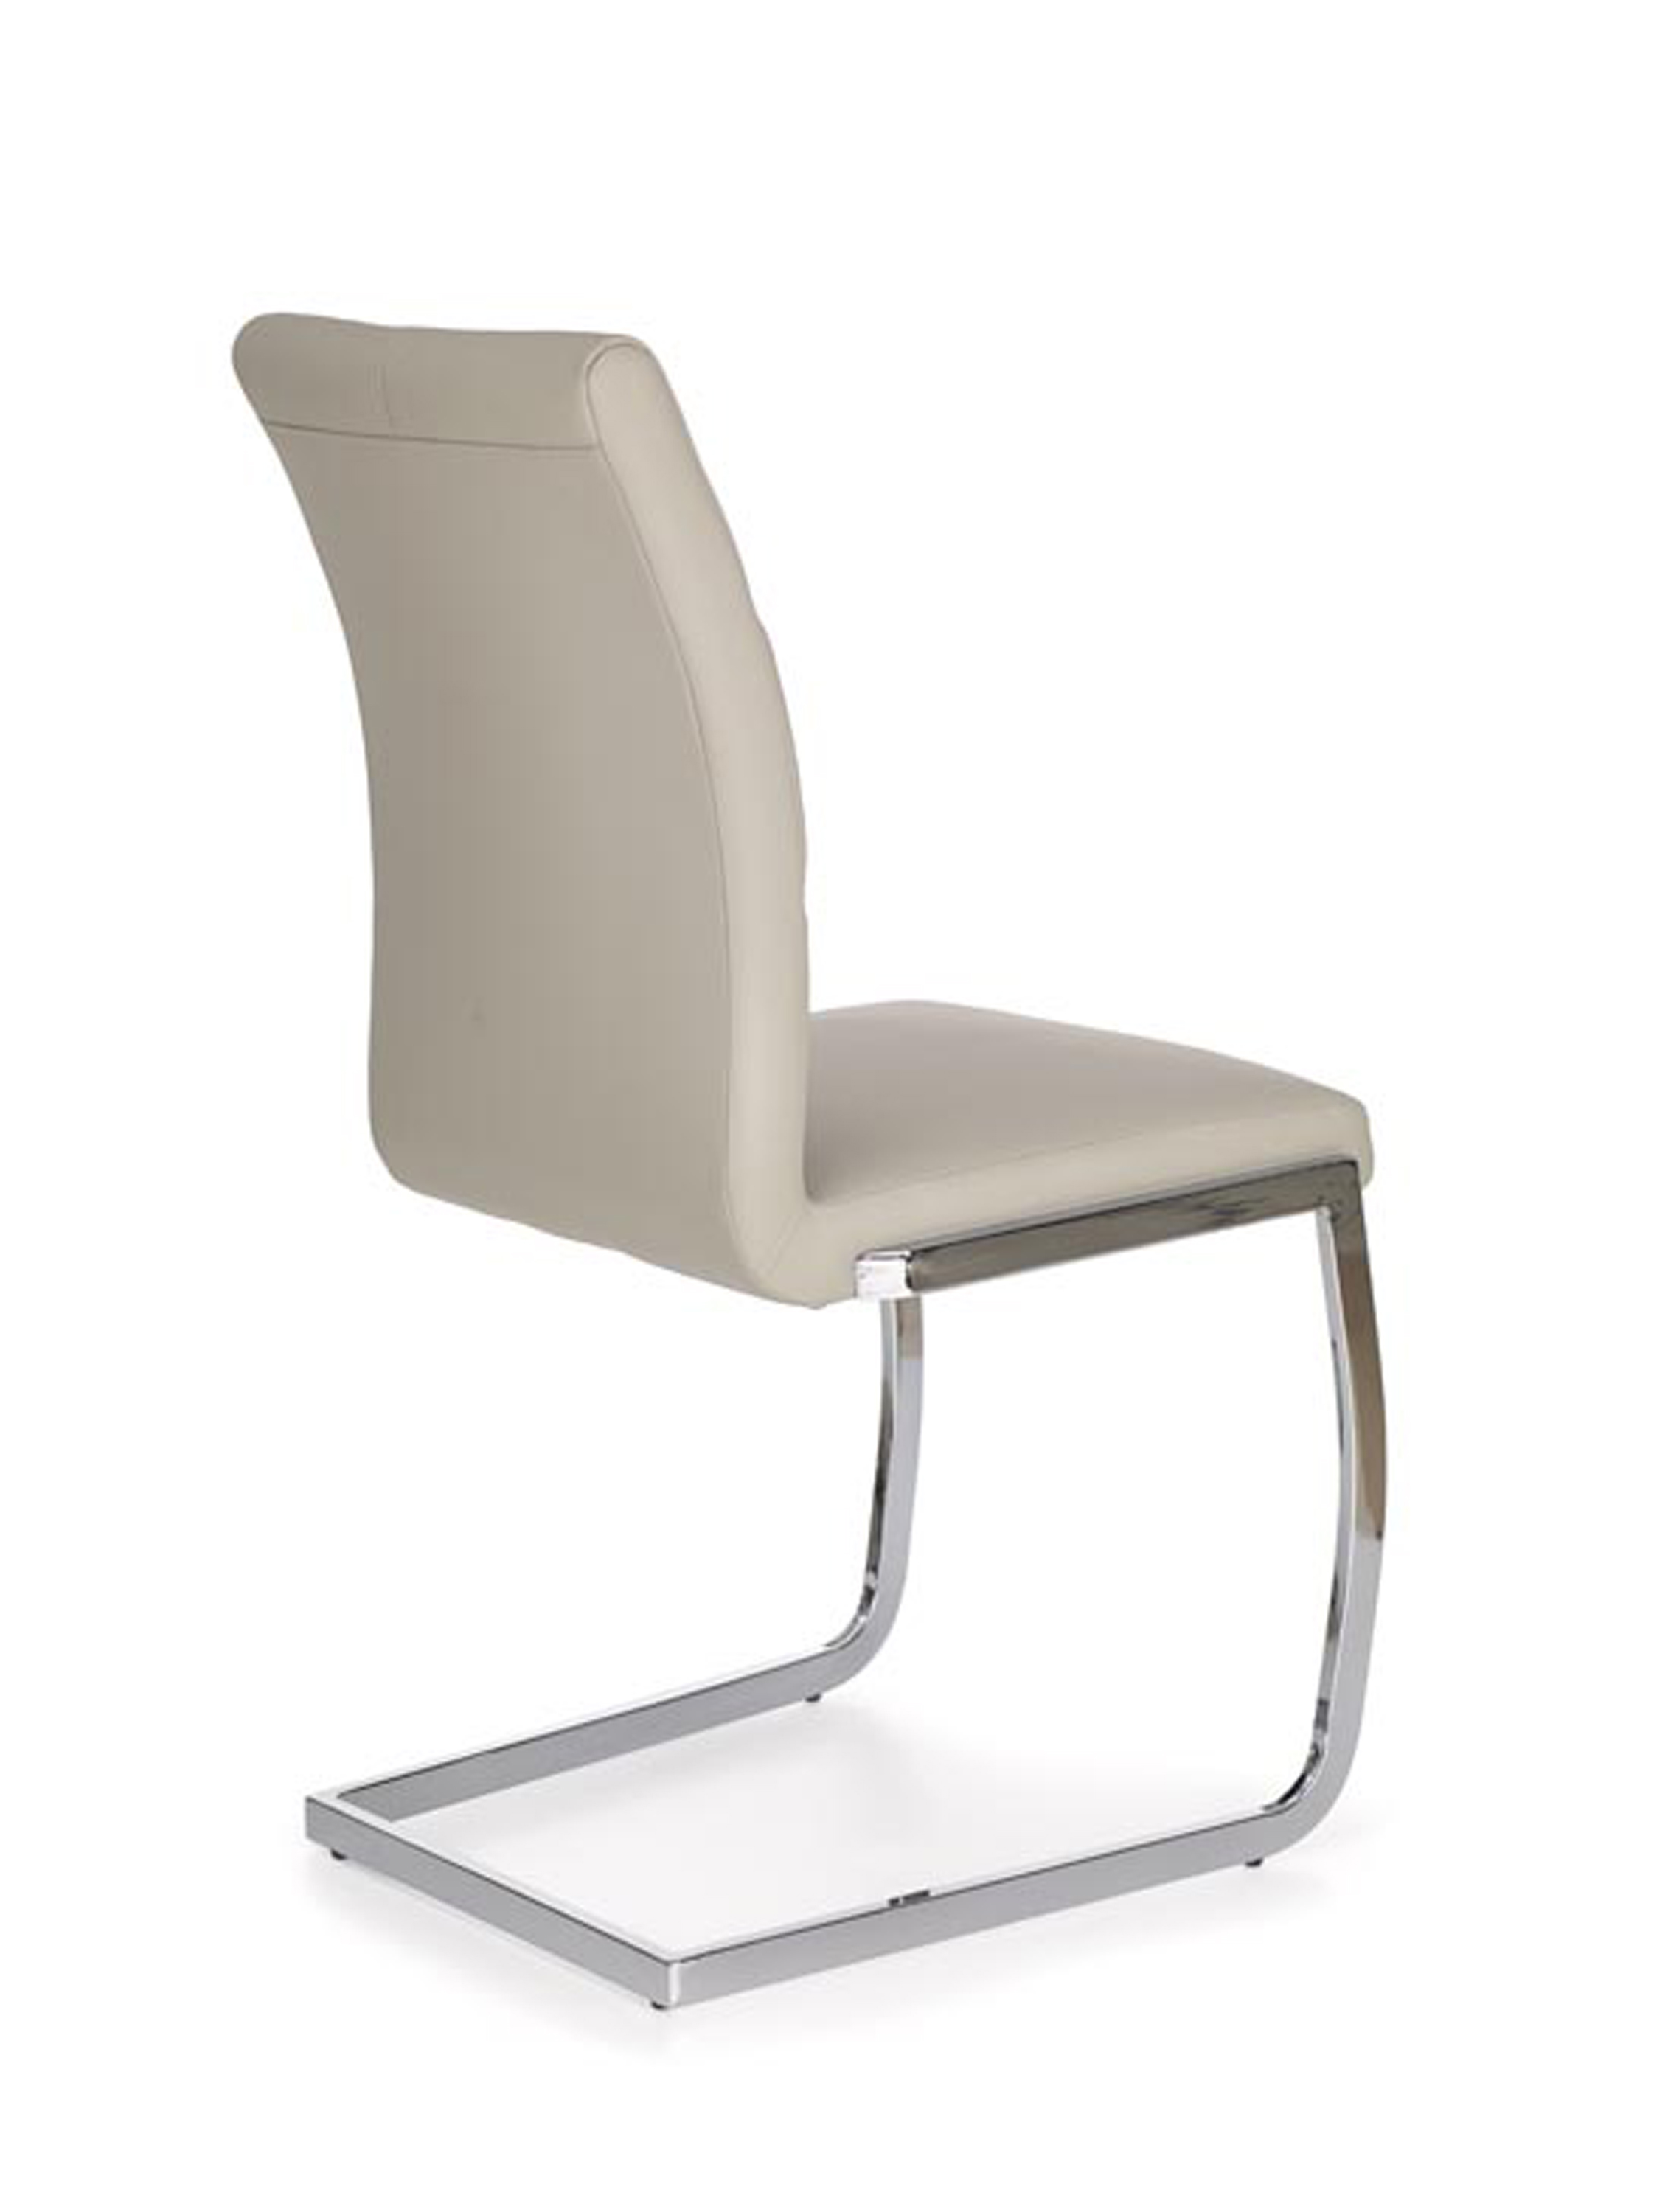 Krzesło K228 - jasny popiel krzesło k228 - jasny popiel